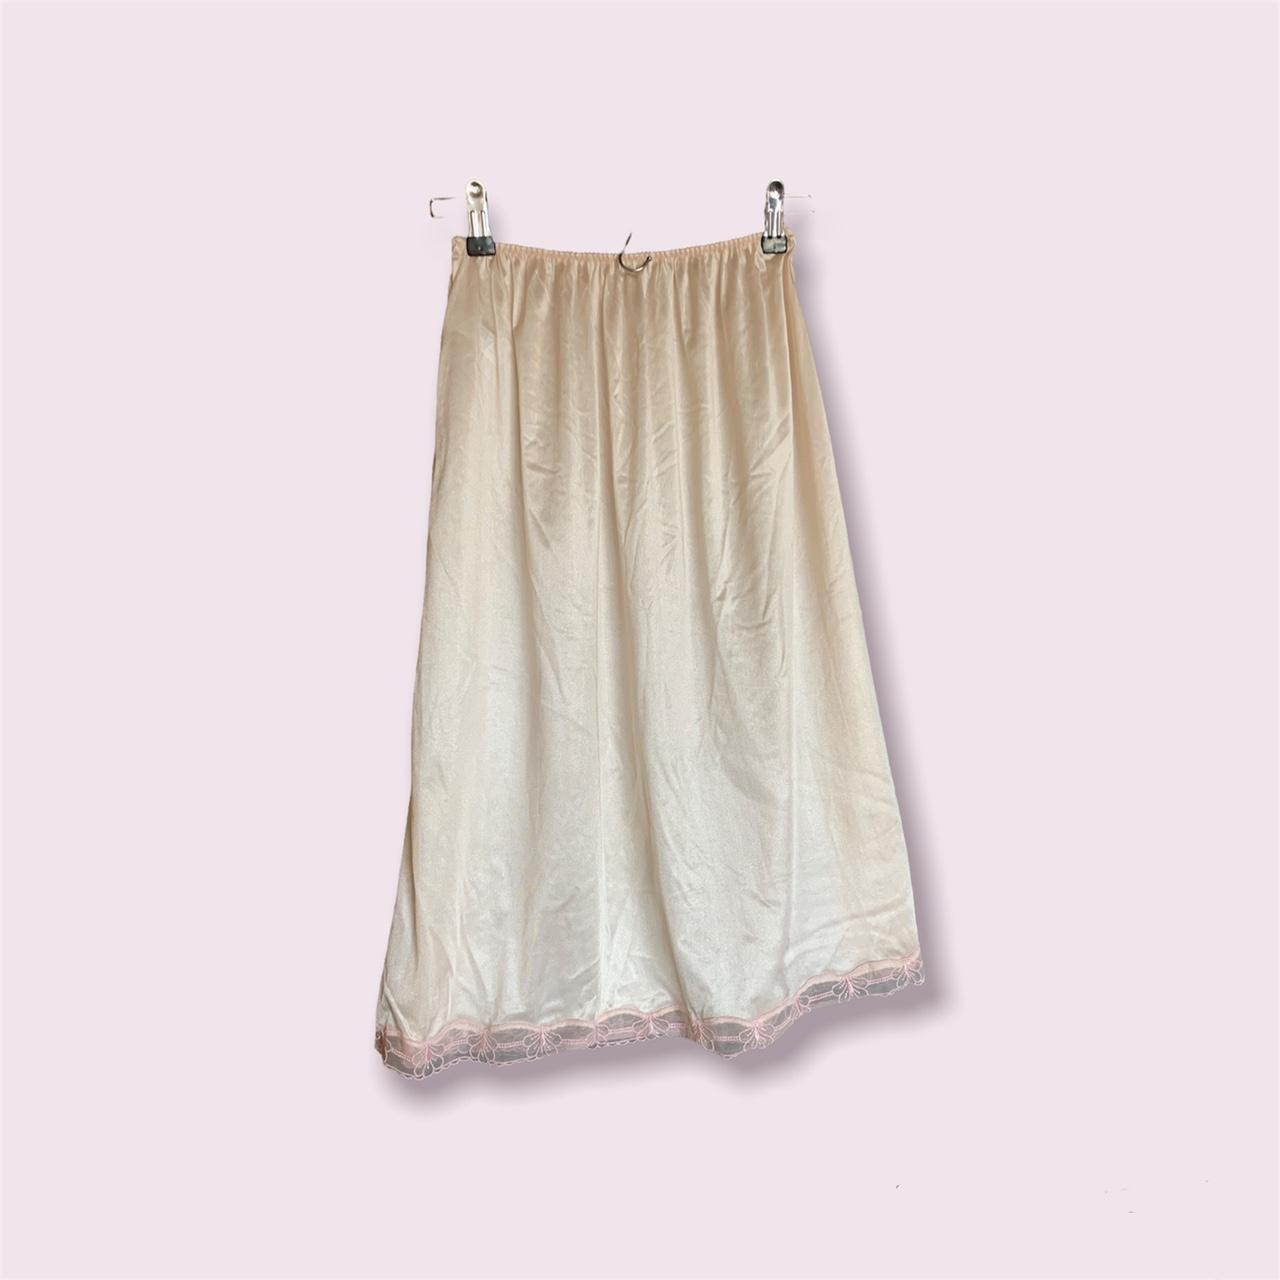 Product Image 1 - slip skirt! this slip skirt